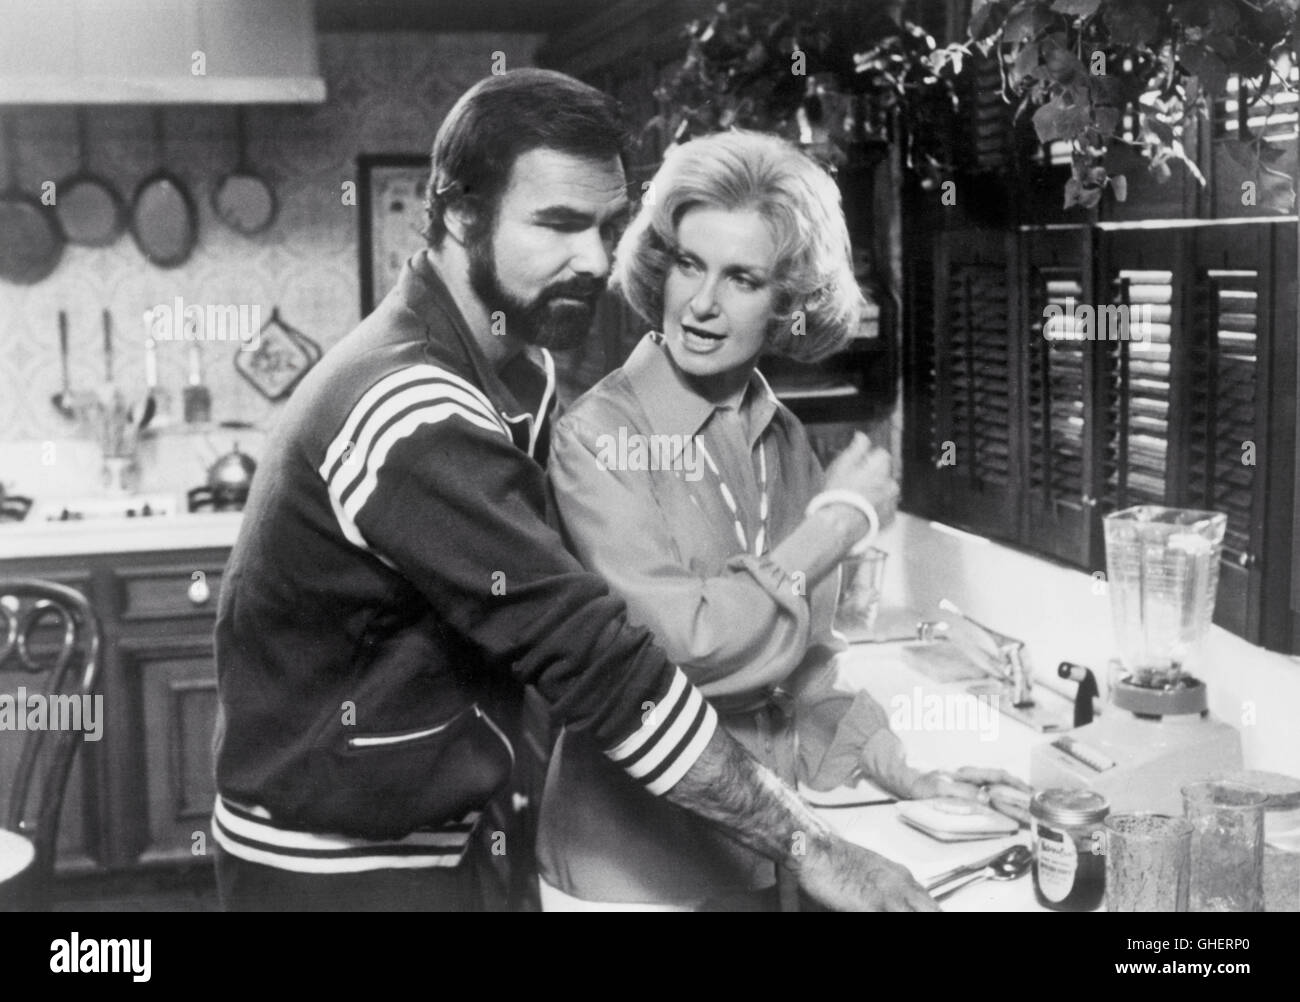 La fine USA 1978 Burt Reynolds cucina scena: invadendo la cucina ordinata della sua ex-moglie, Jessica (JOANNE WOODWARD) Sonny Lawson (Burt Reynolds) constata che egli è un gradito ospite. Regie: Burt Reynolds Foto Stock